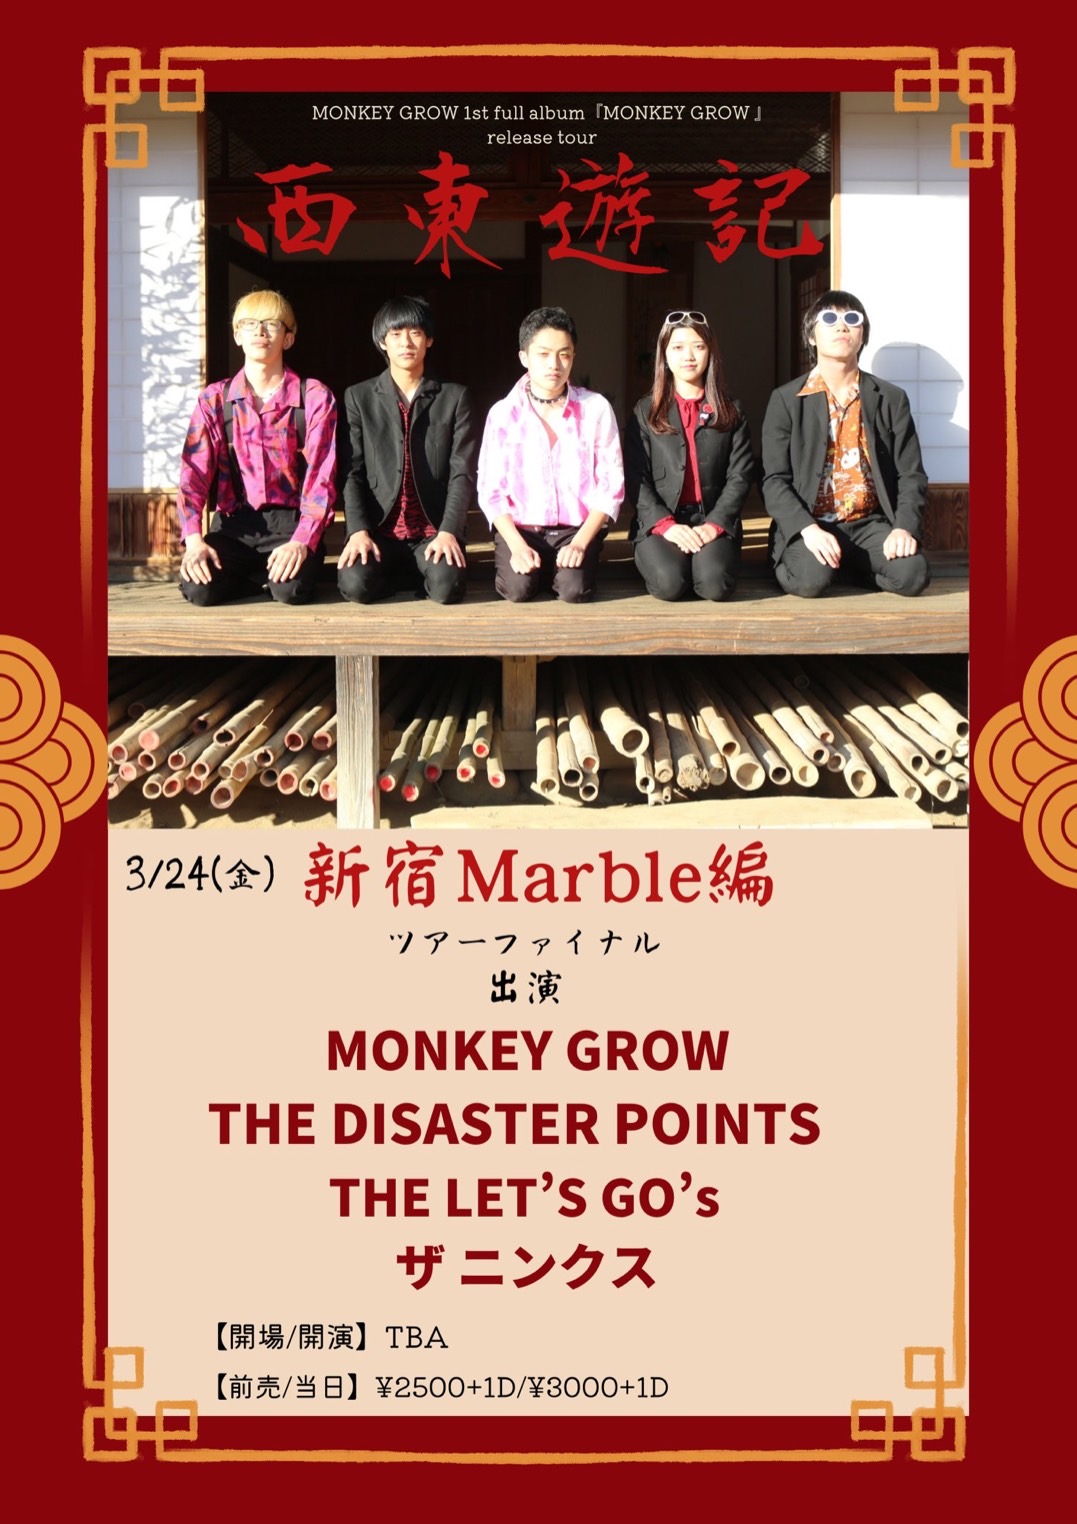 MONKEY GROW 1st full album「MONKEY GROW」release tour 『西東遊記』TOUR FINAL